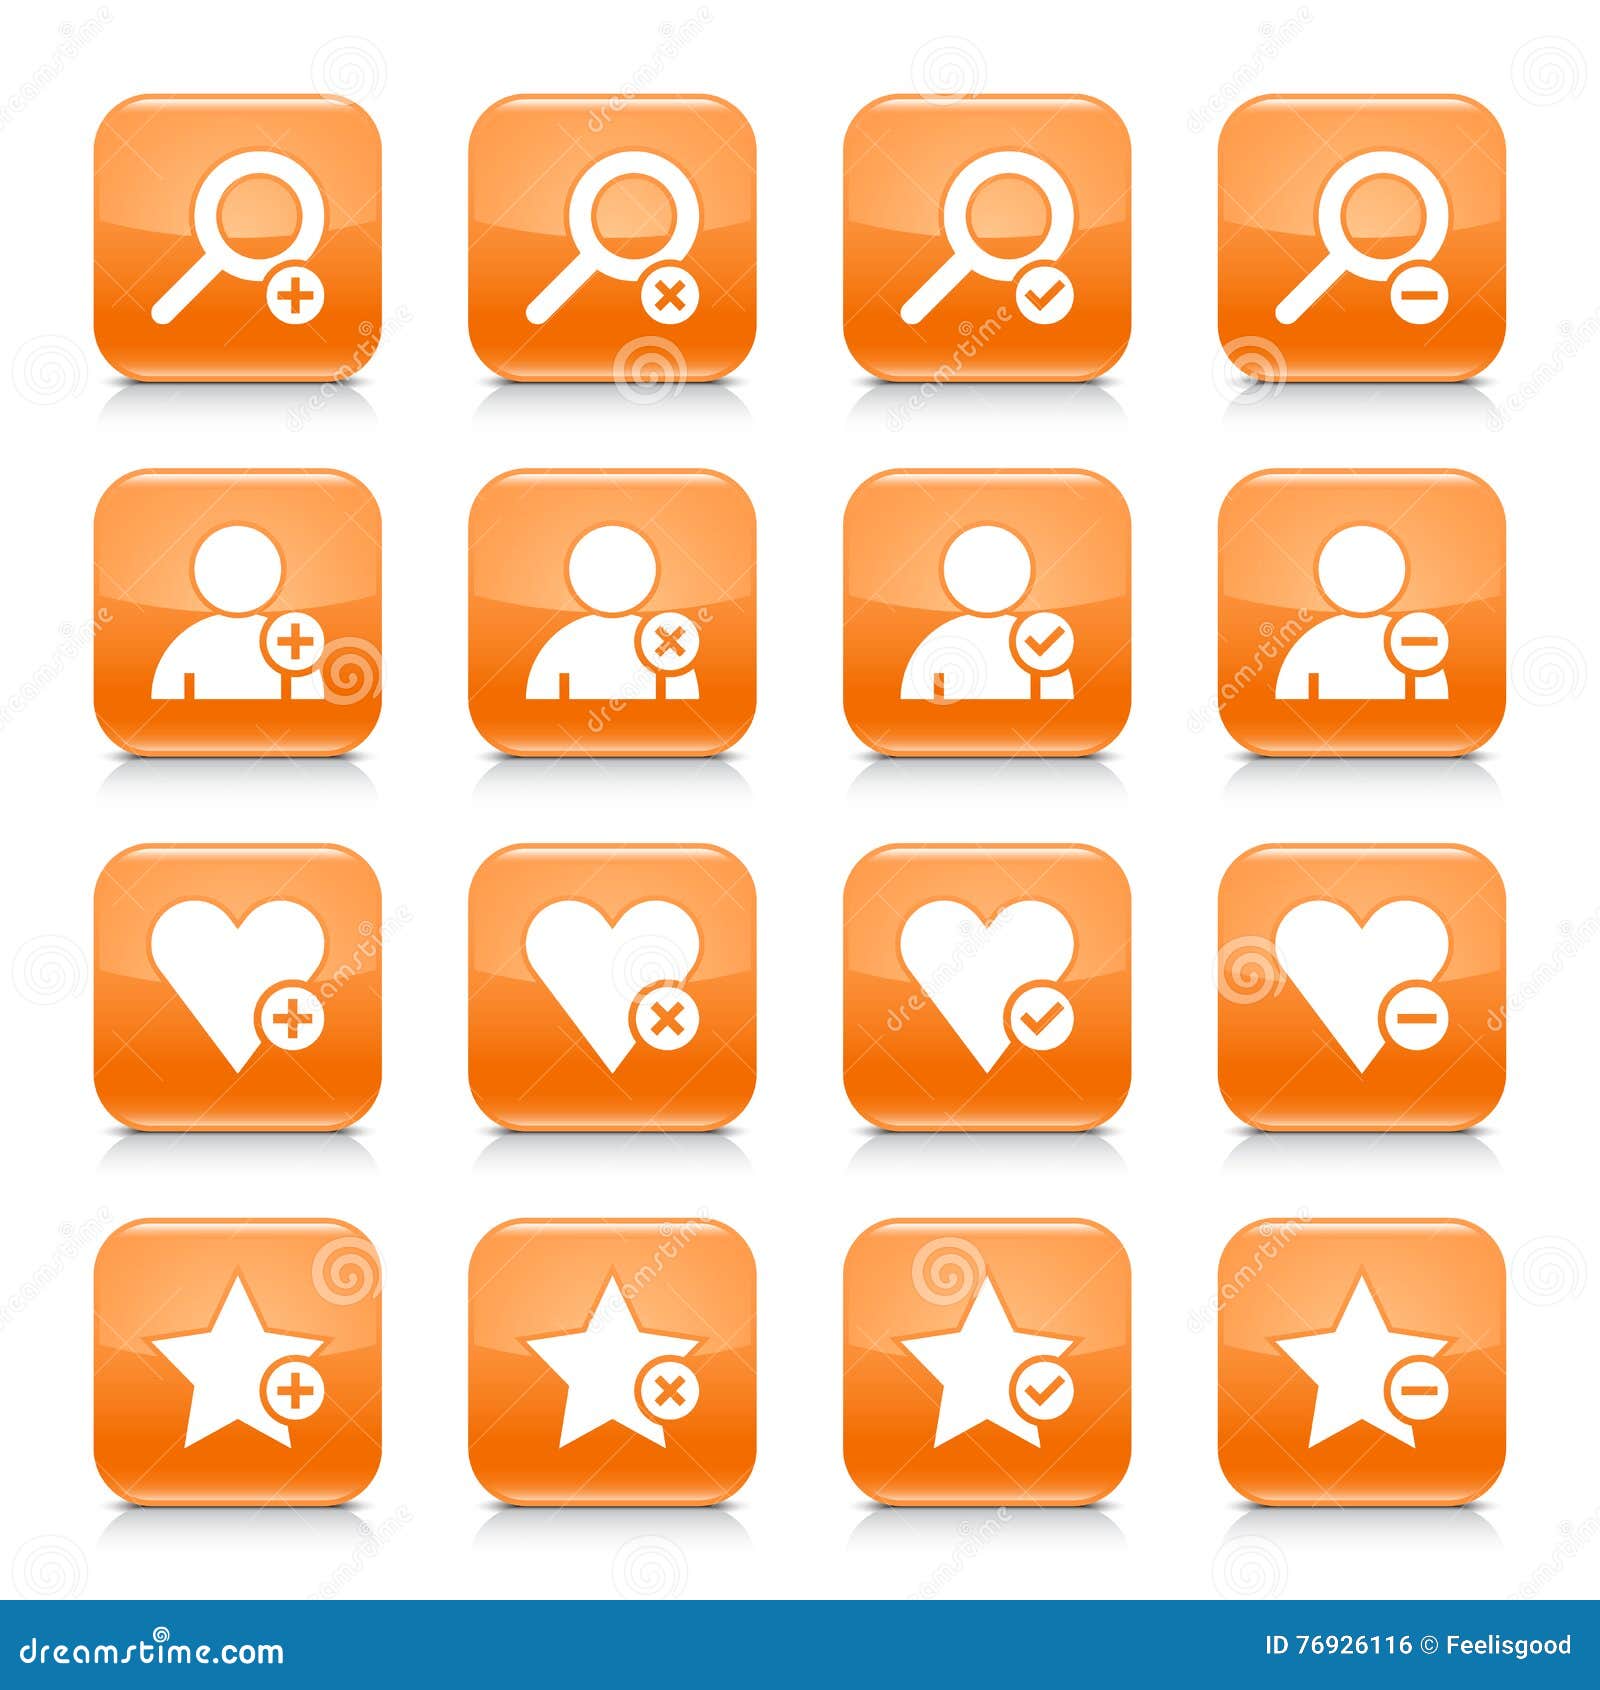 orange additional sign square icon web button